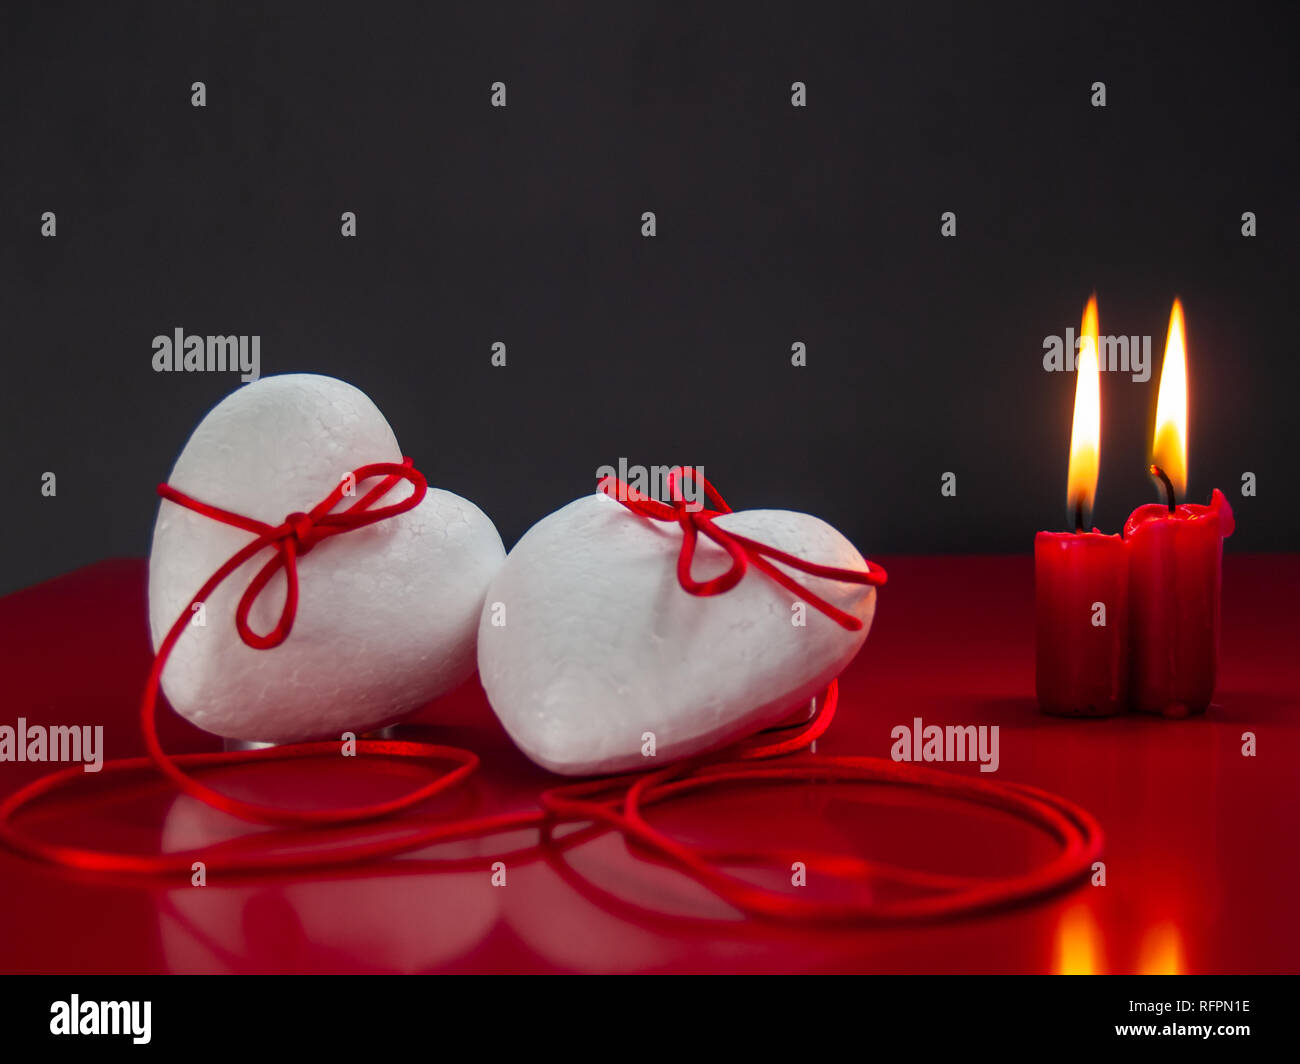 Concetto di amore poliespan due cuori uniti con un filo rosso che  simboleggia la leggenda del filo rosso e rosso due candele accese Foto  stock - Alamy